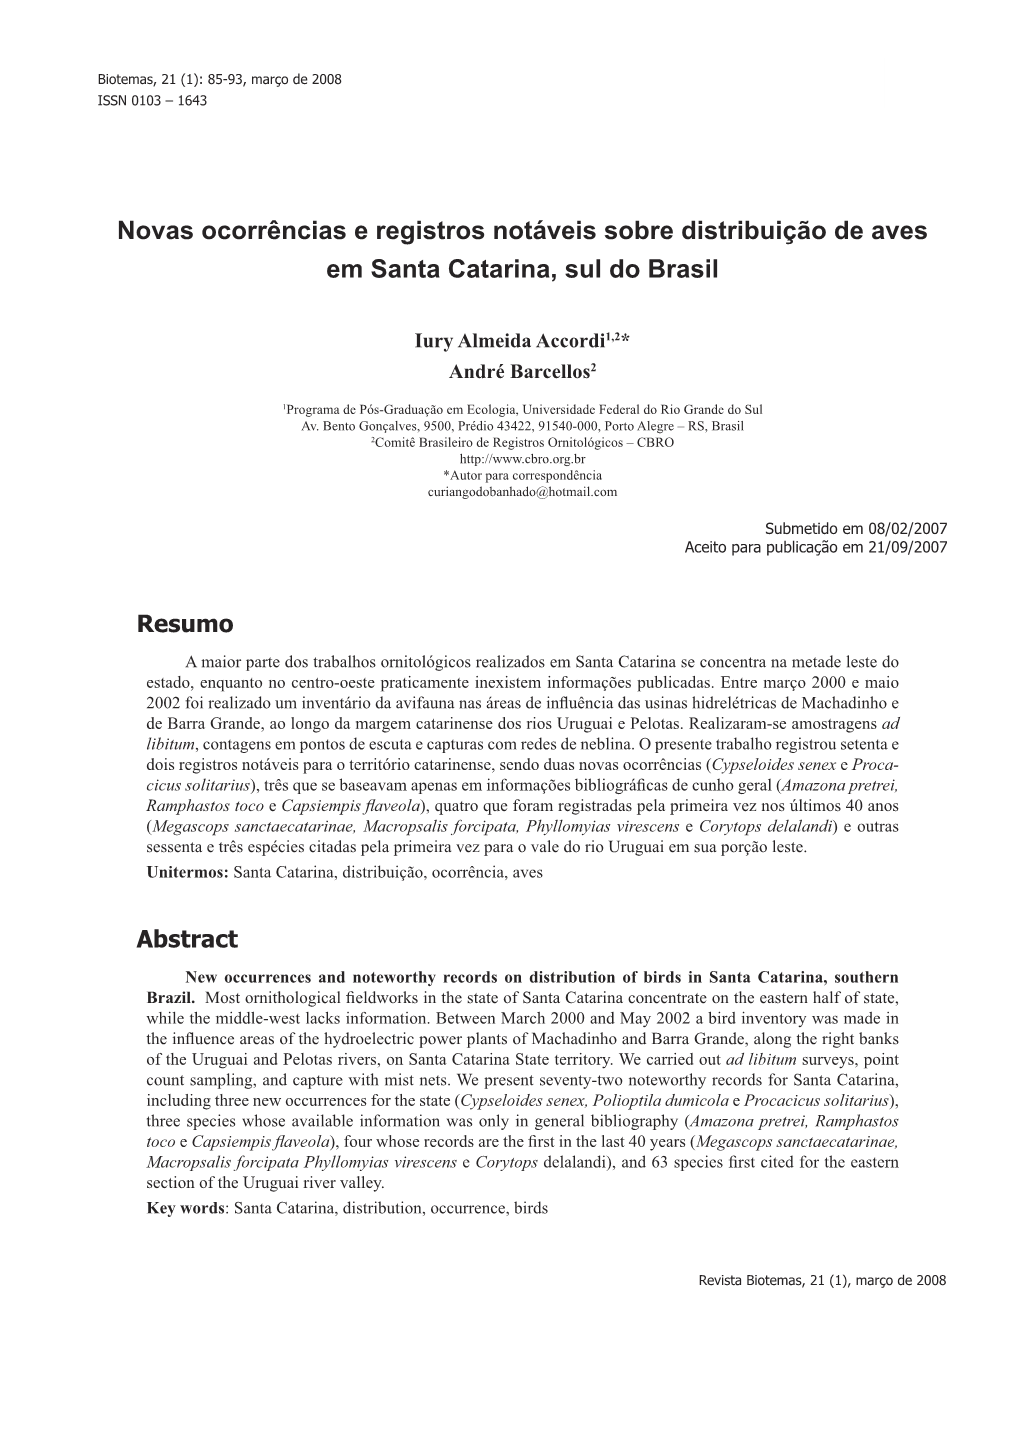 Novas Ocorrências E Registros Notáveis Sobre Distribuição De Aves Em Santa Catarina, Sul Do Brasil